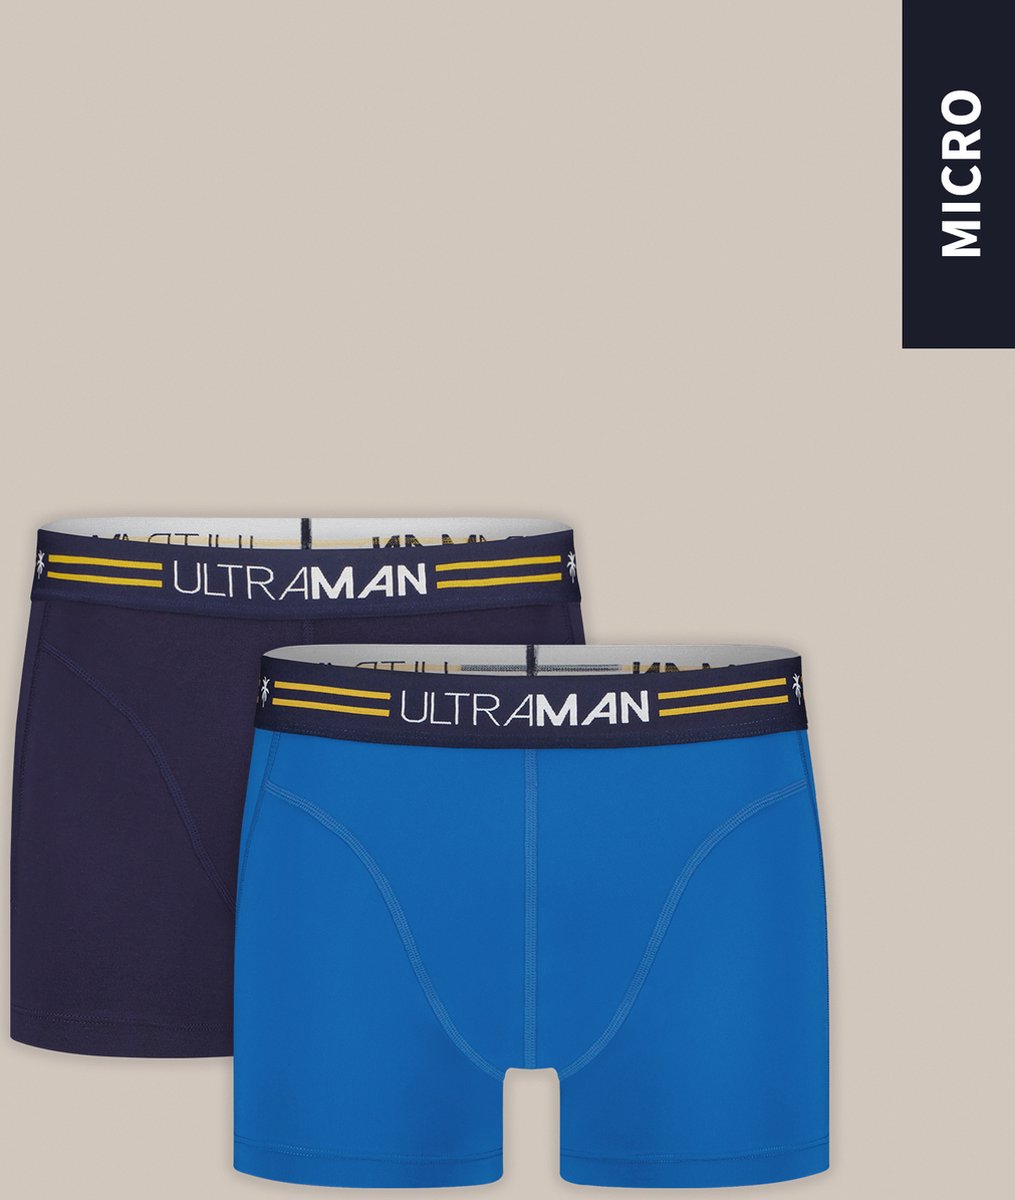 Sapph & Ultraman - 2-pack boxershort heren / ondergoed heren - Blauw - Microstof - Sneldrogend - S